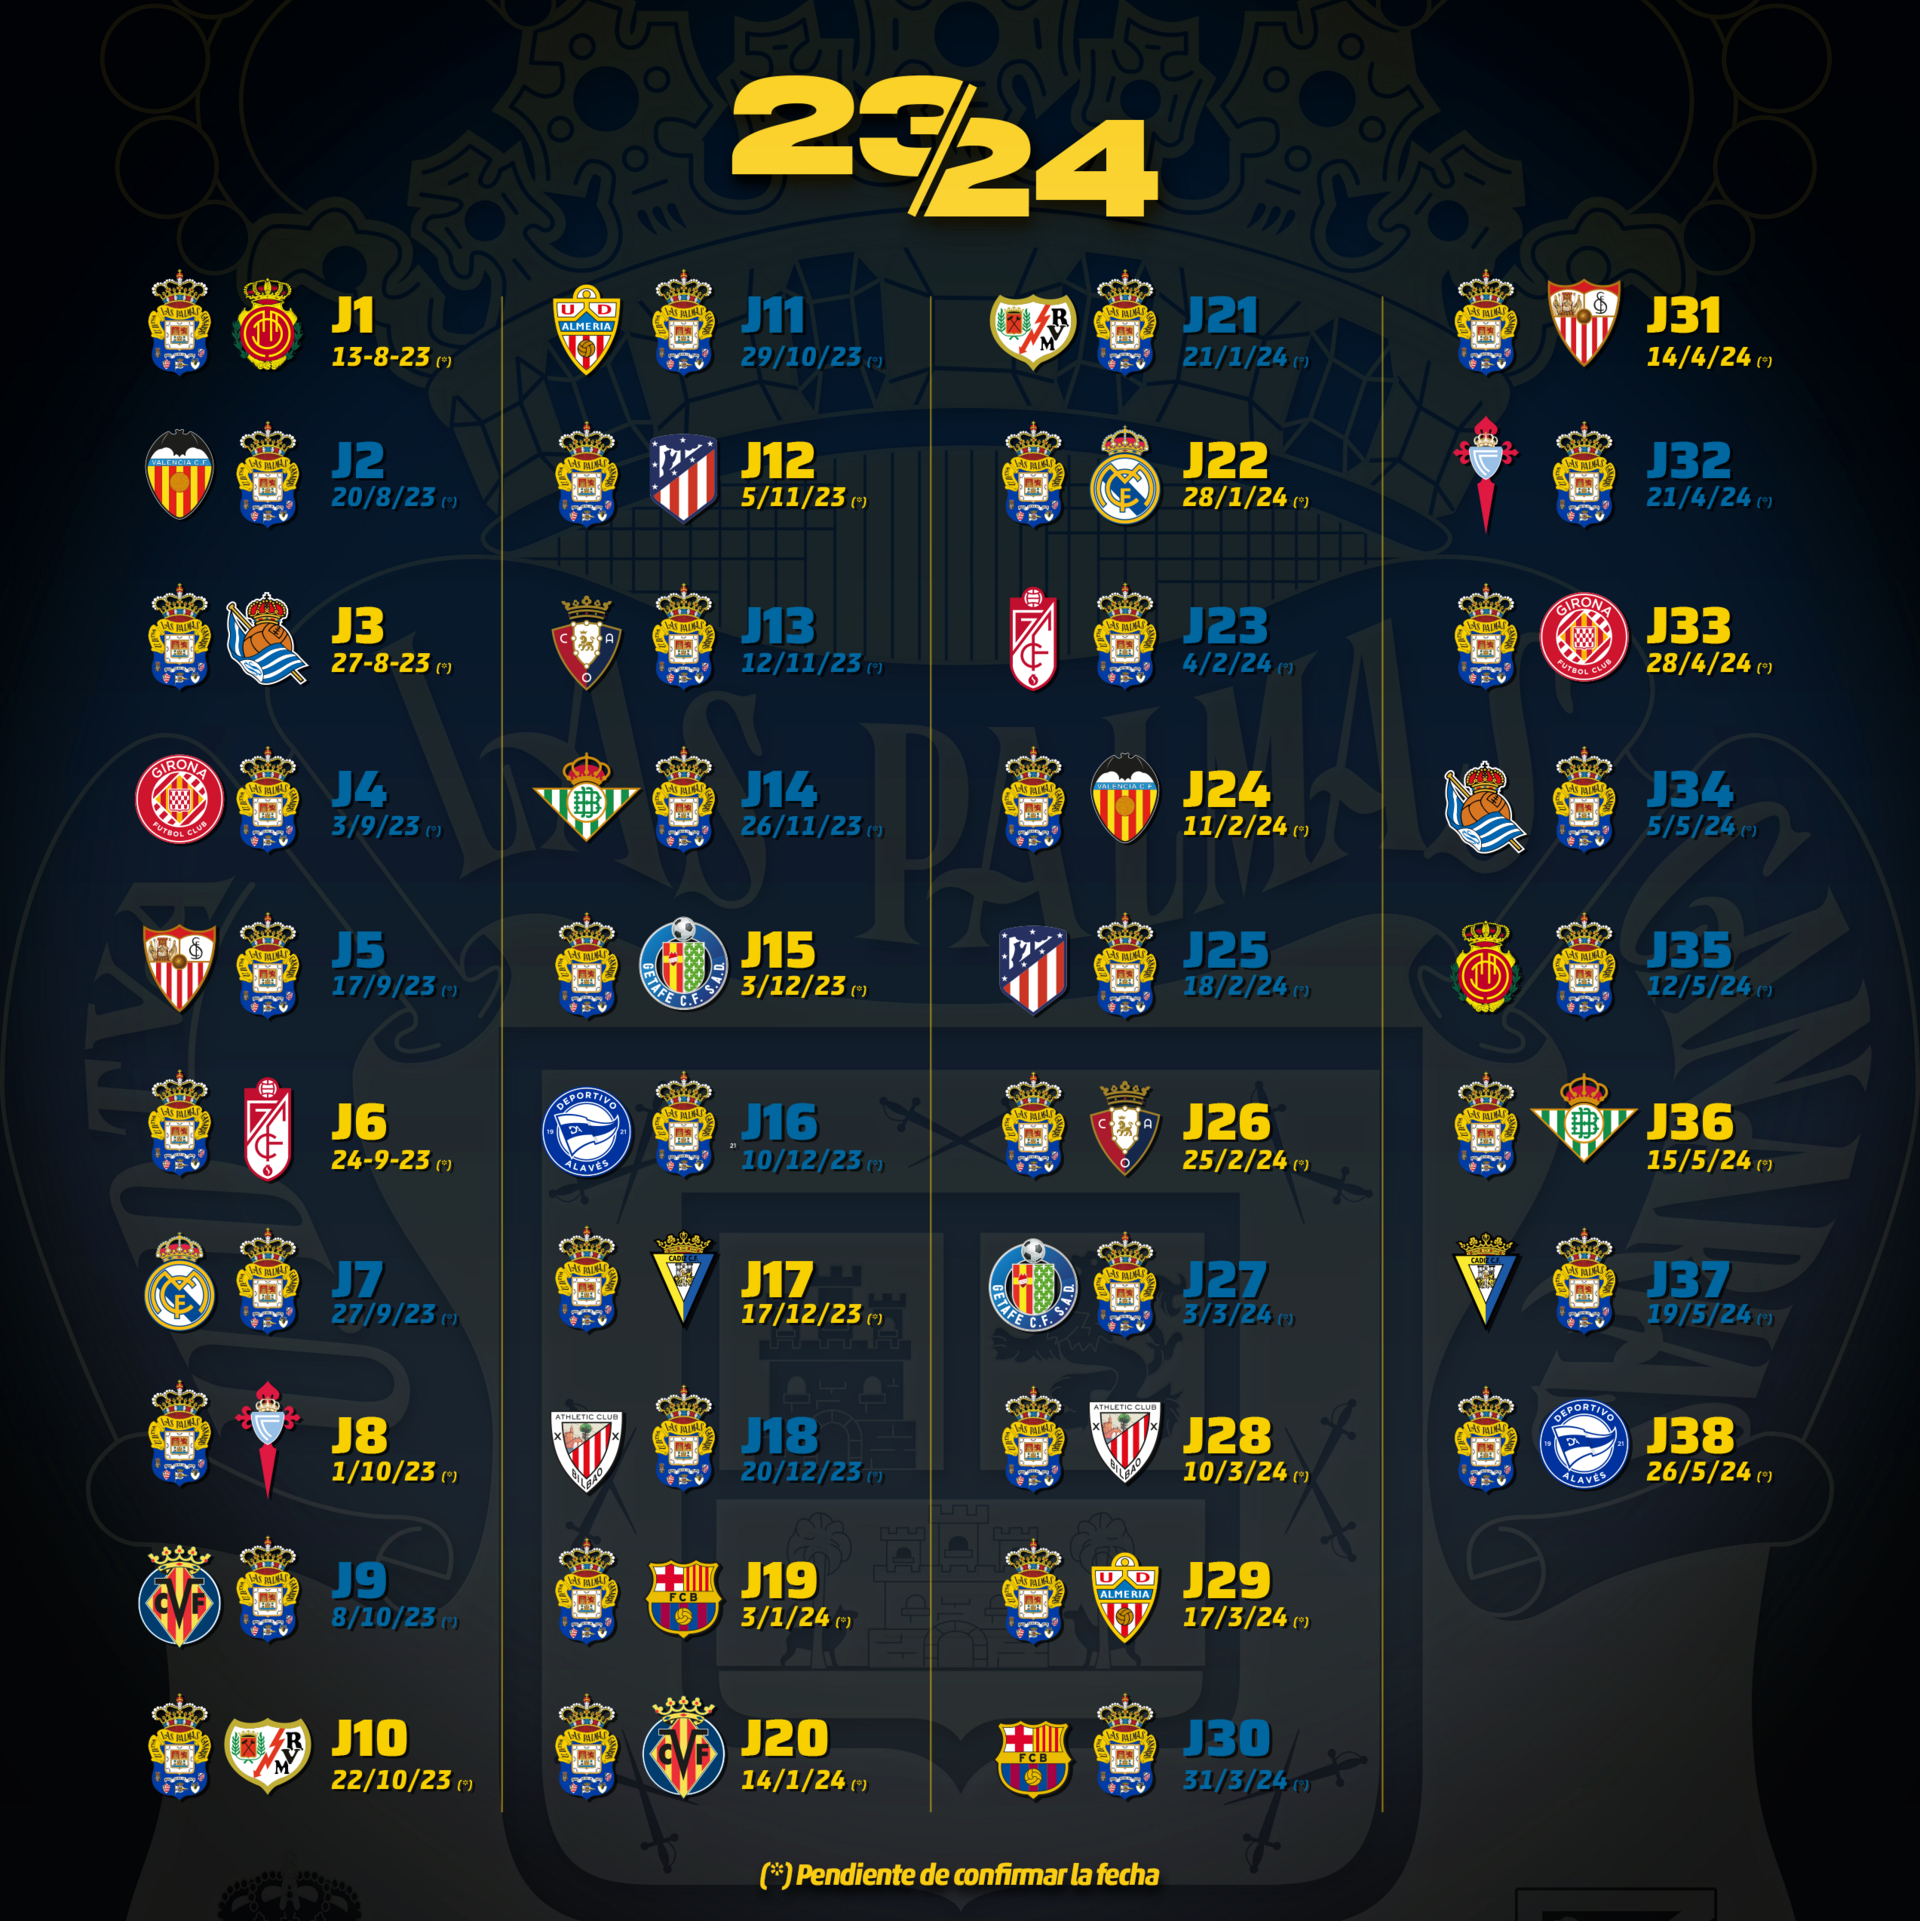 Pretemporada del Atlético de Madrid para 2023/2024: Calendario y horarios.